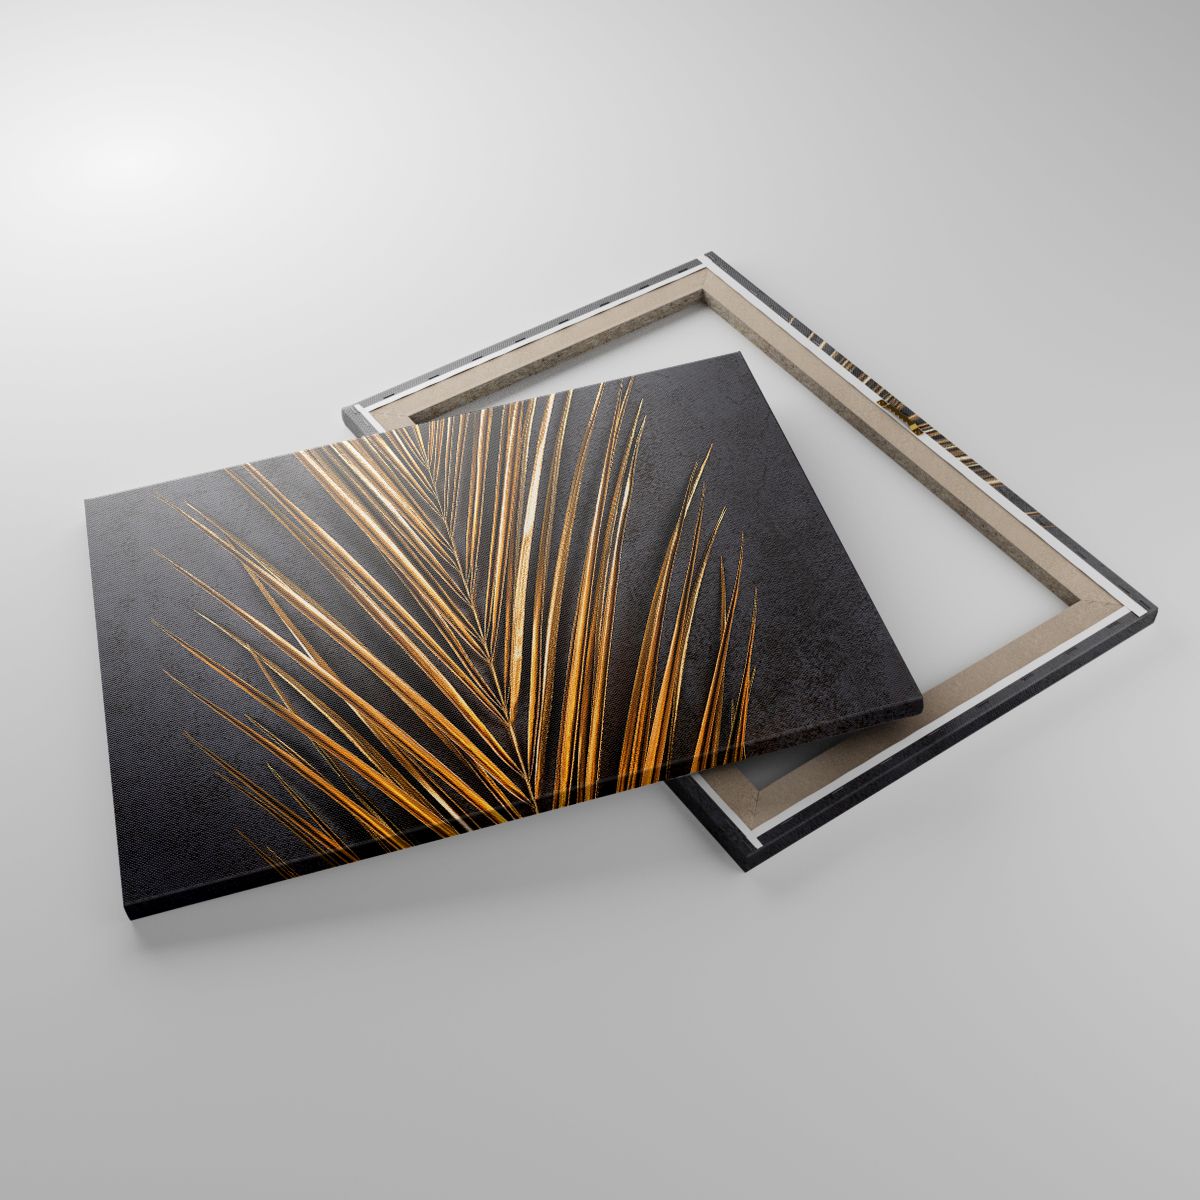 Leinwandbild Palmblatt, Leinwandbild Kunst, Leinwandbild Abstraktion, Leinwandbild Exotisch, Leinwandbild Gold